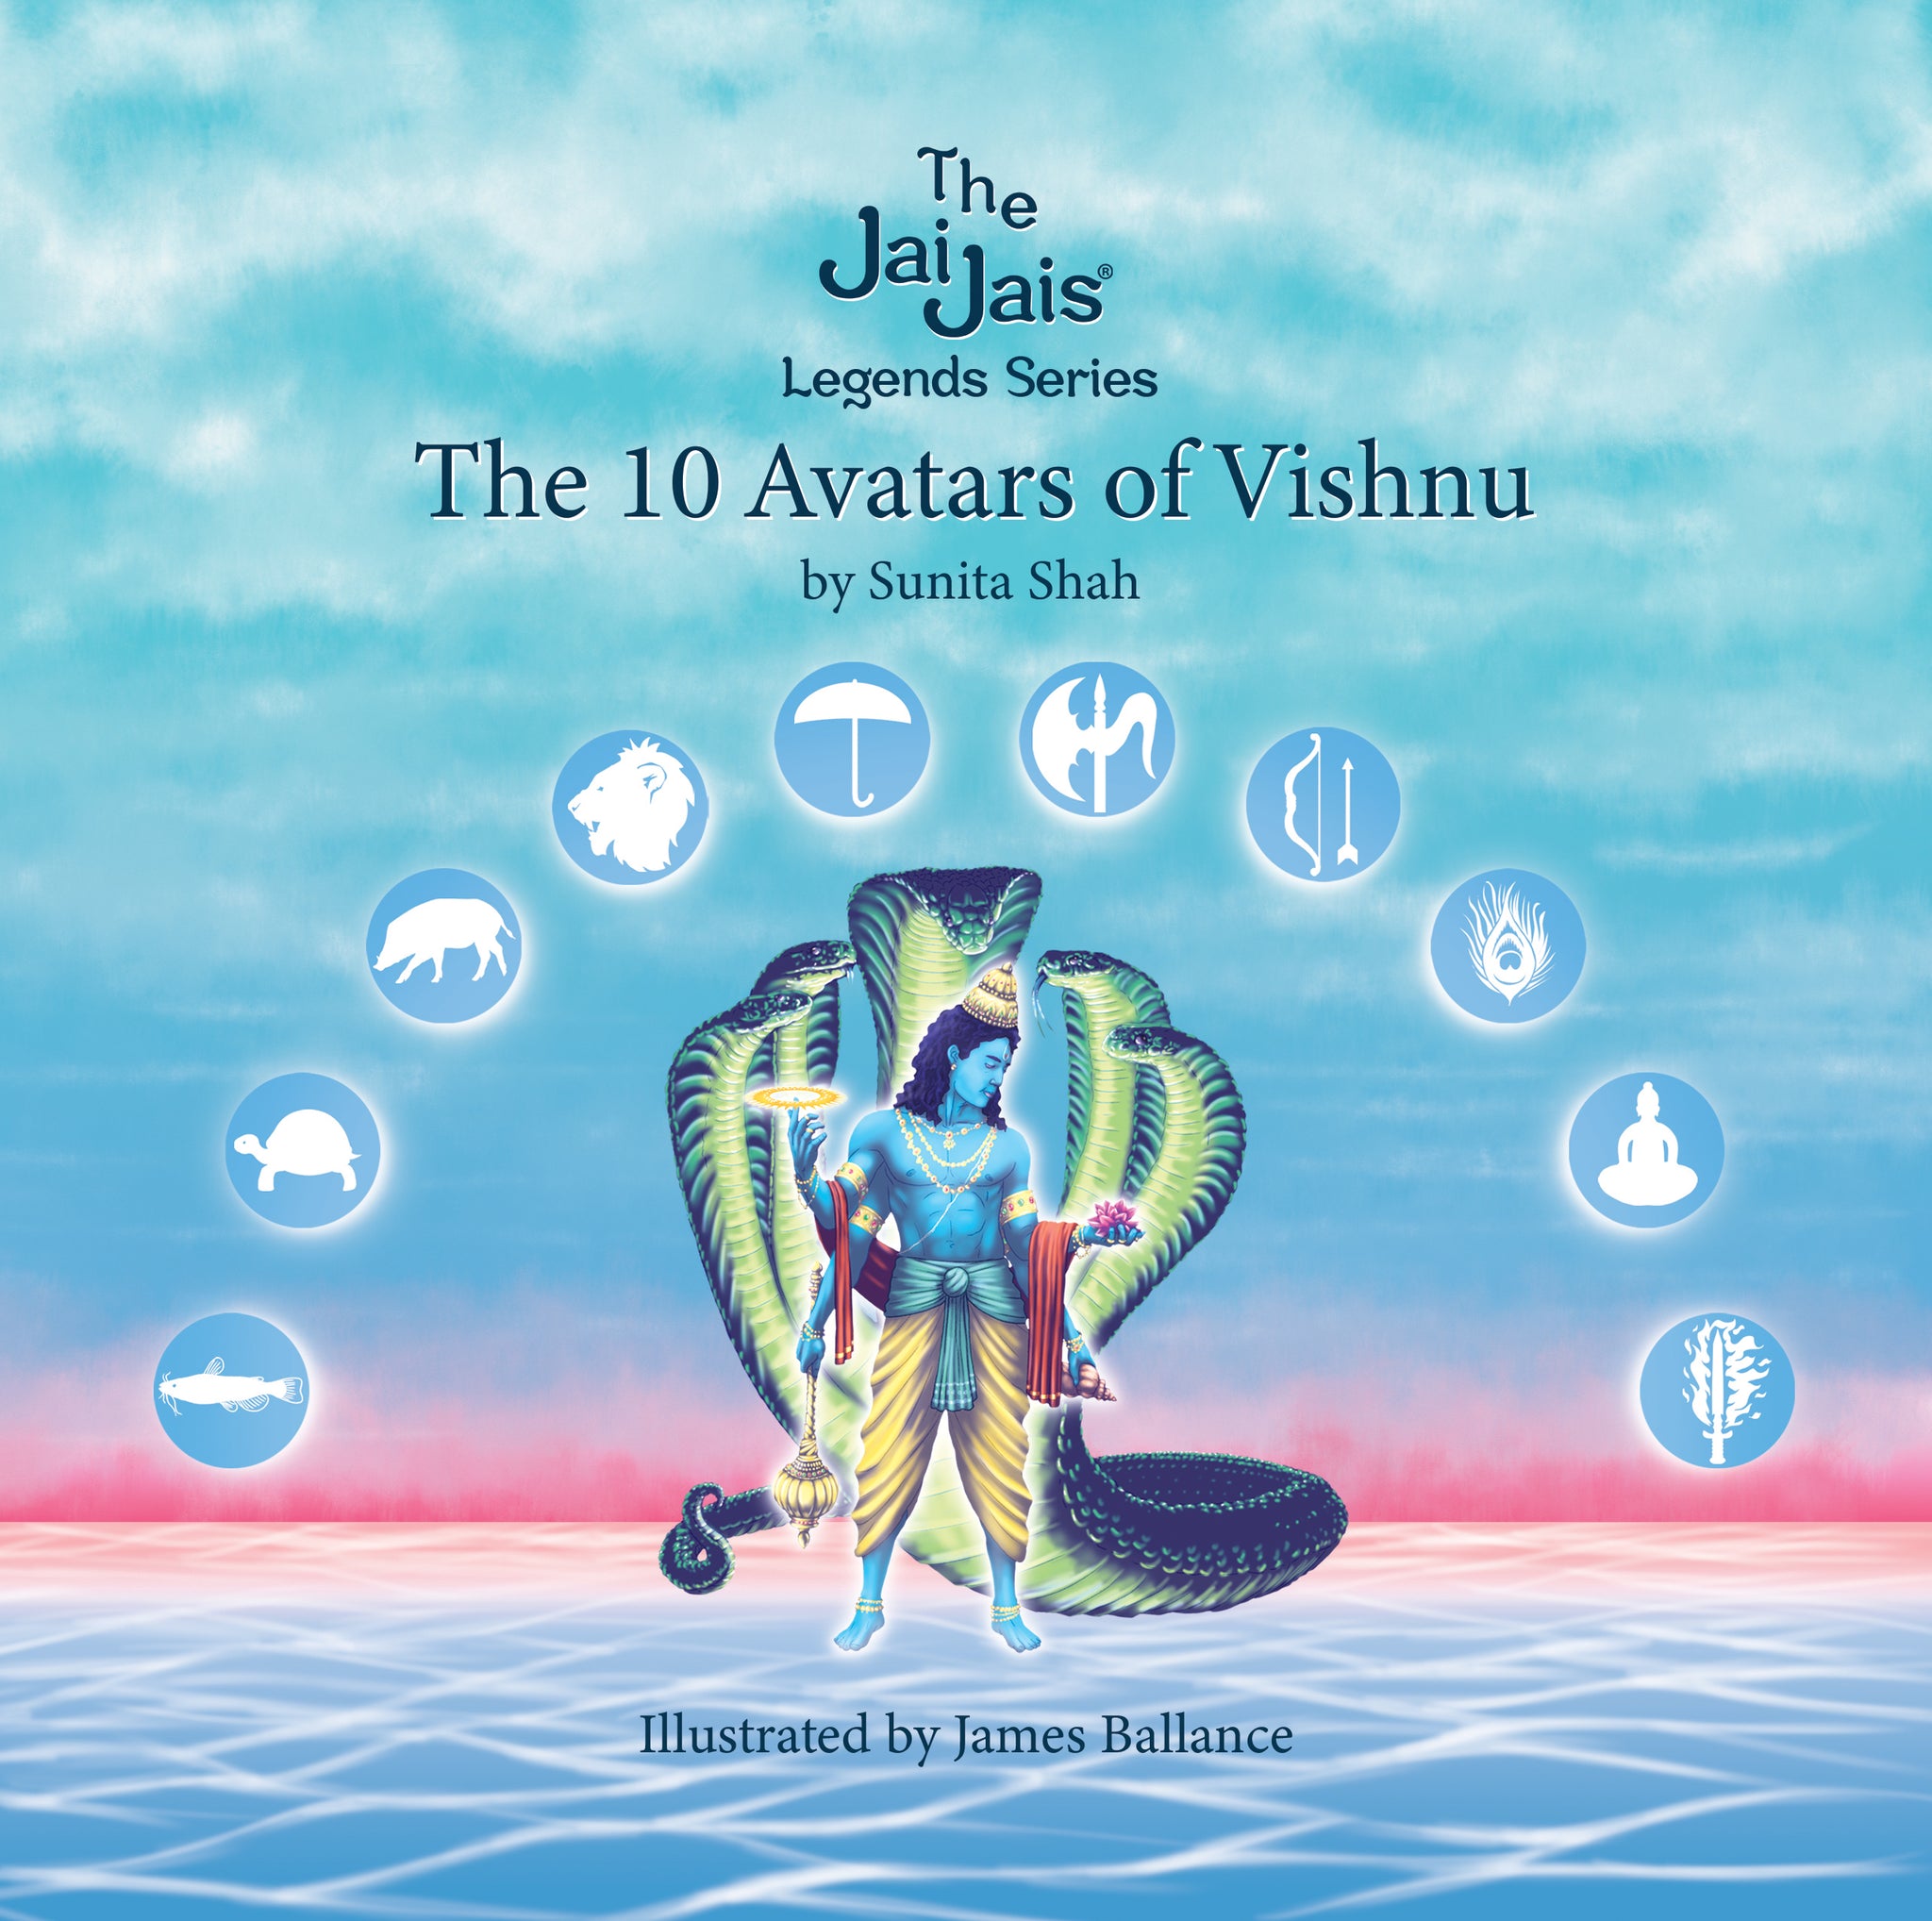 The 10 Avatars of Vishnu | The Jai Jais